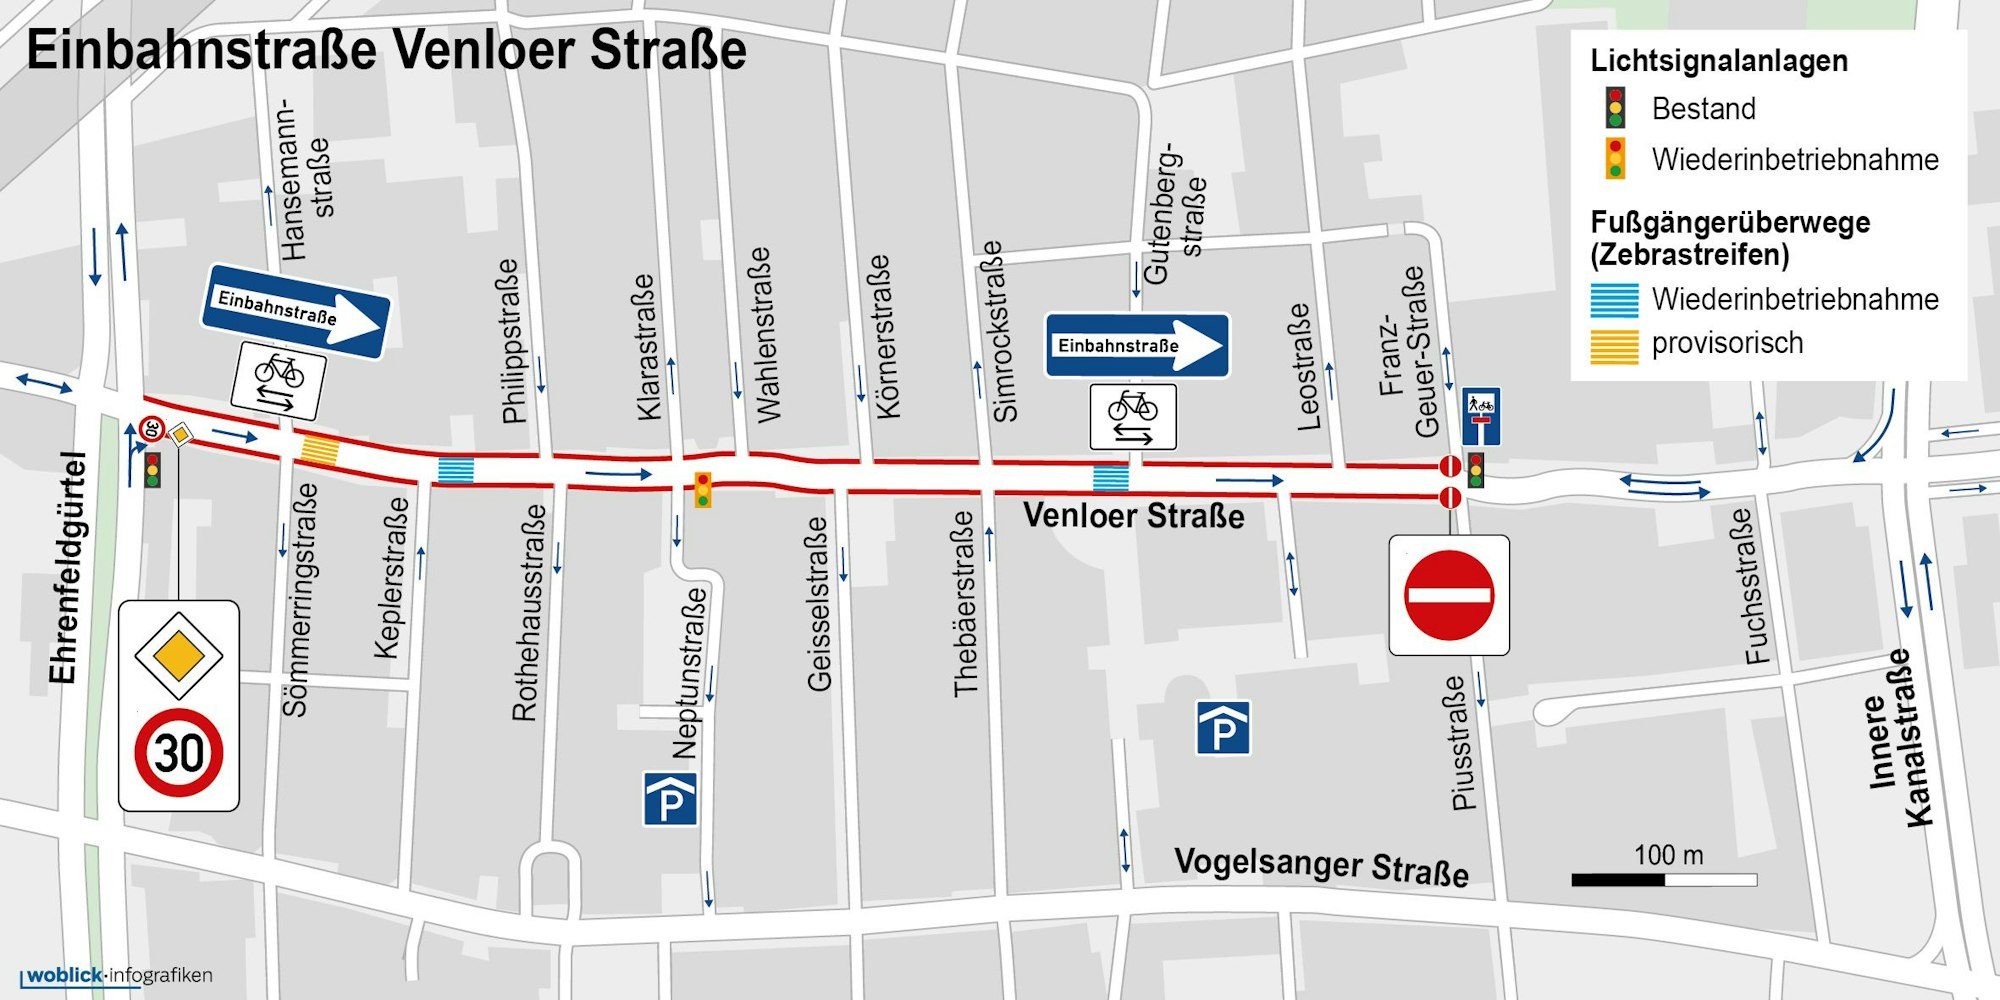 In diesem Bereich der Venloer Straße gilt die Einbahnstraße.